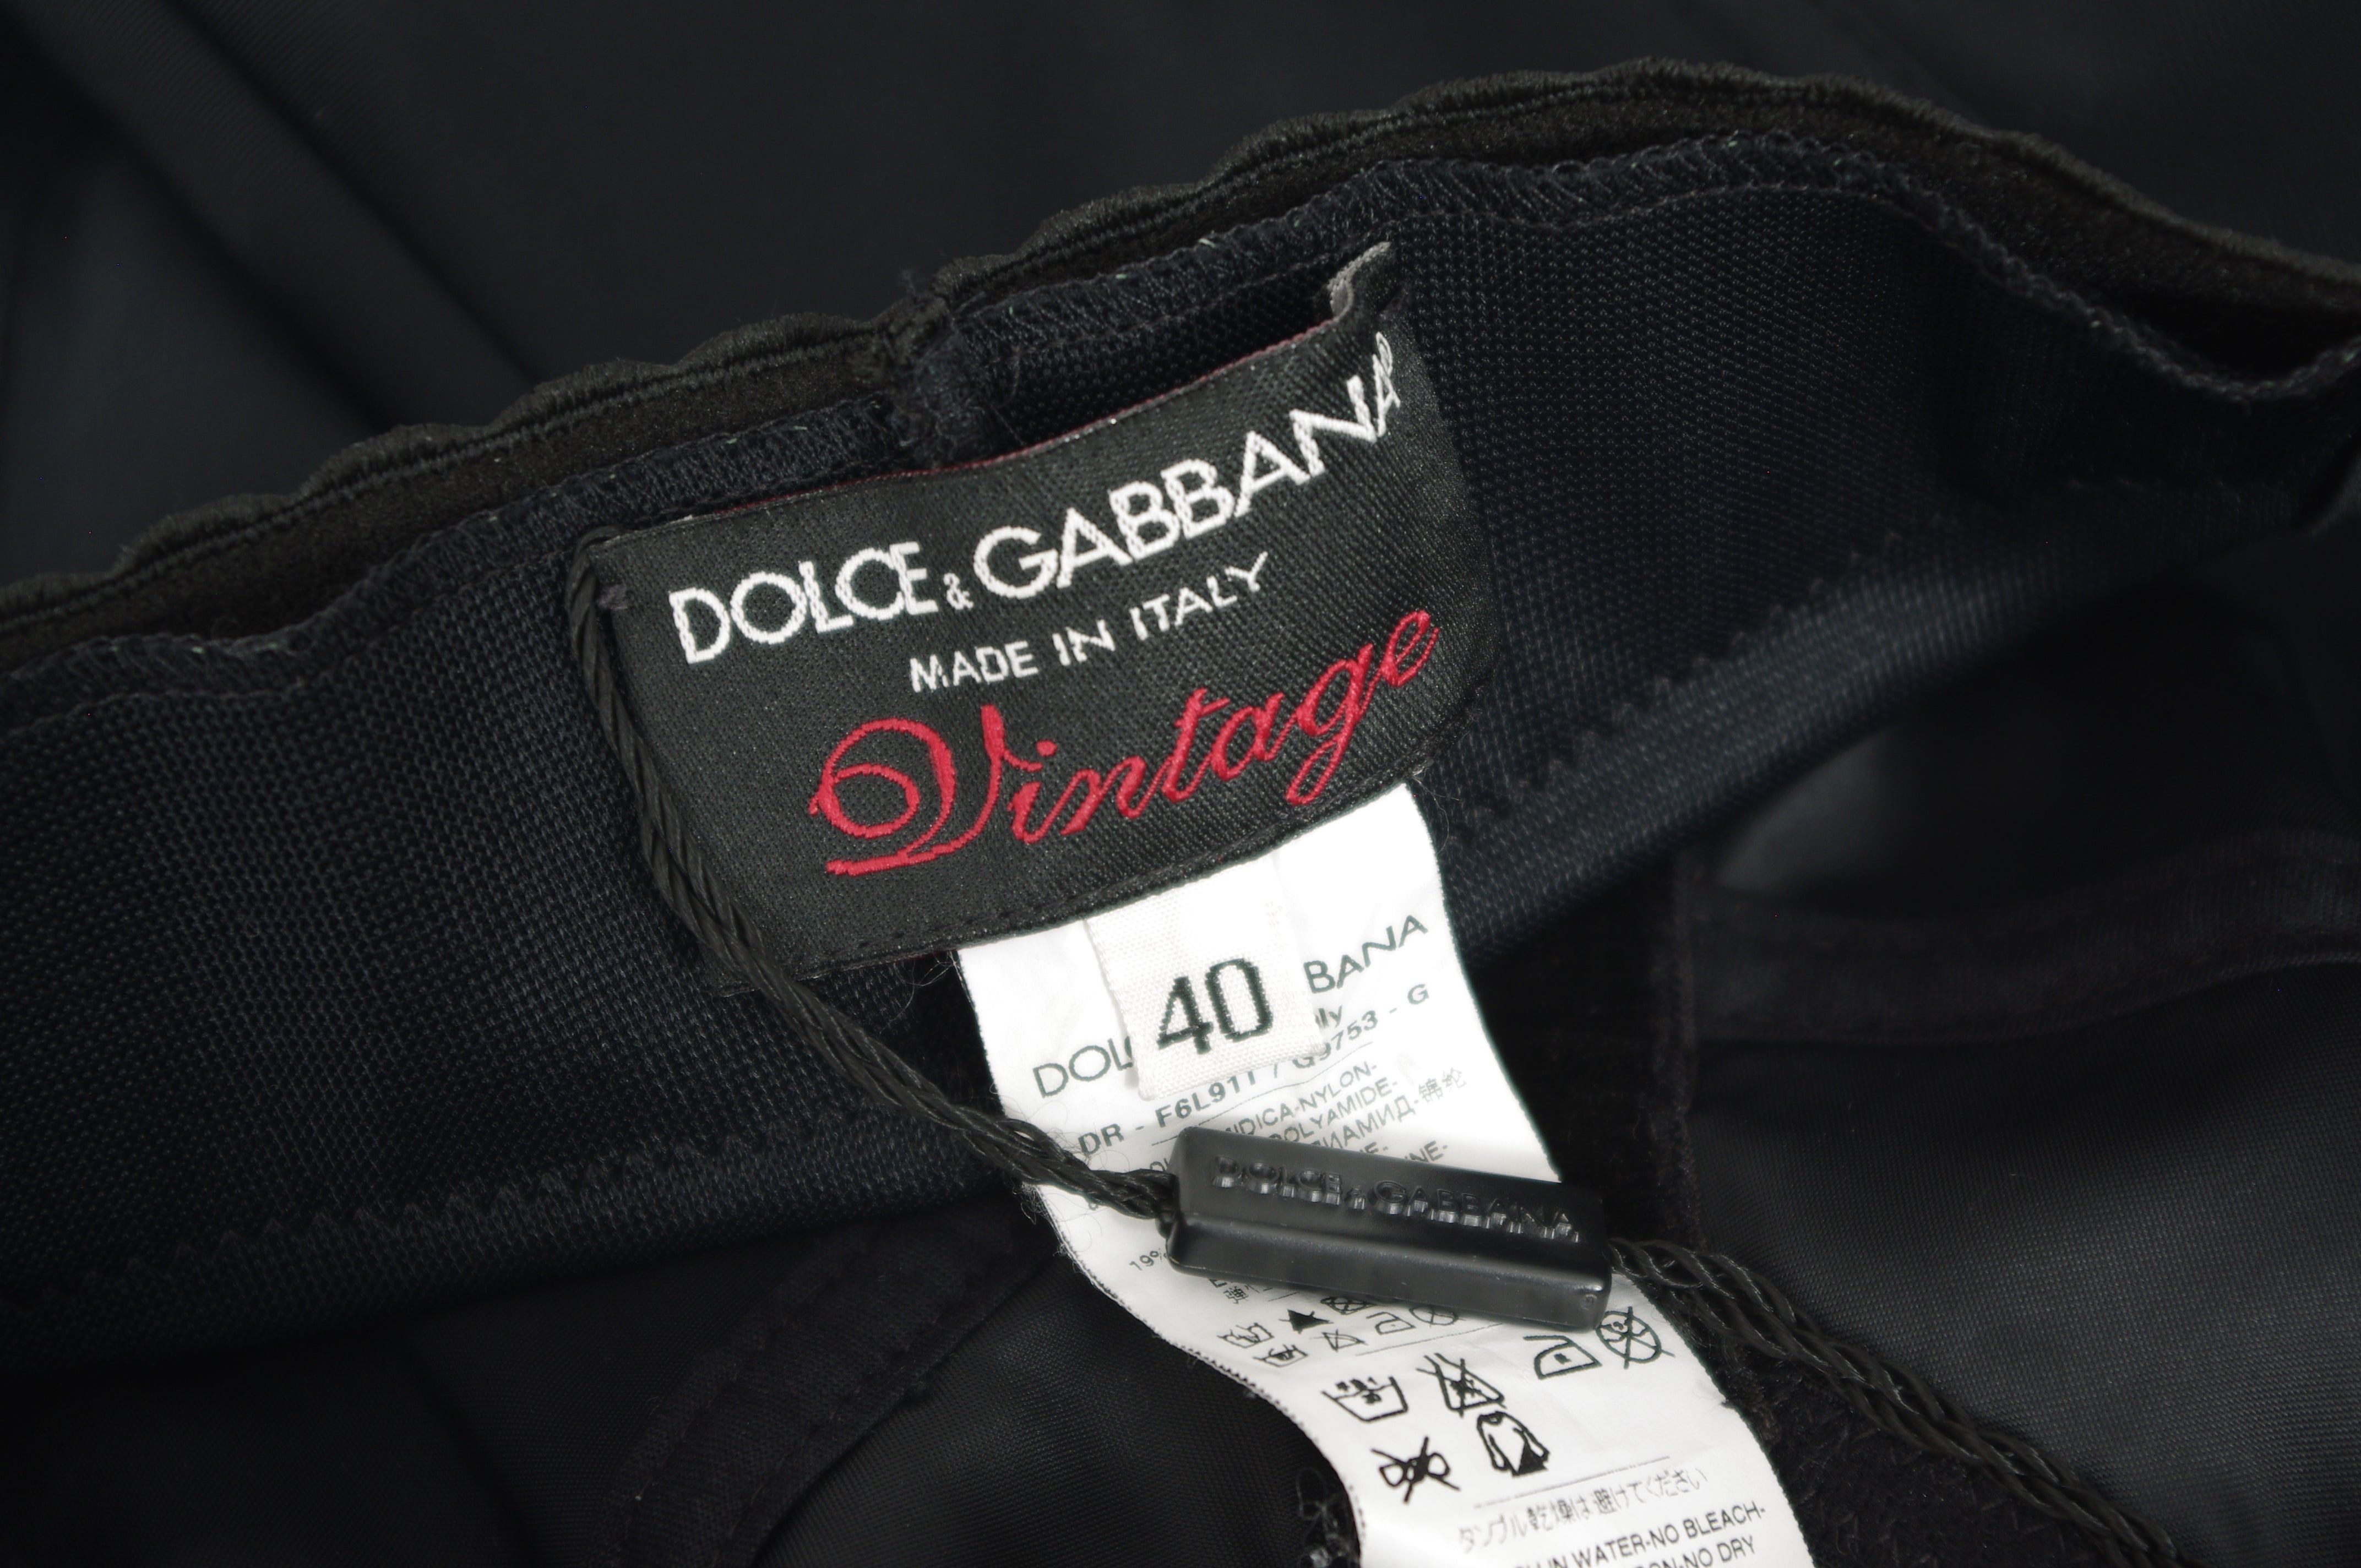 "Vintage" Limited Edition Black Lace Bustier Corset Dress